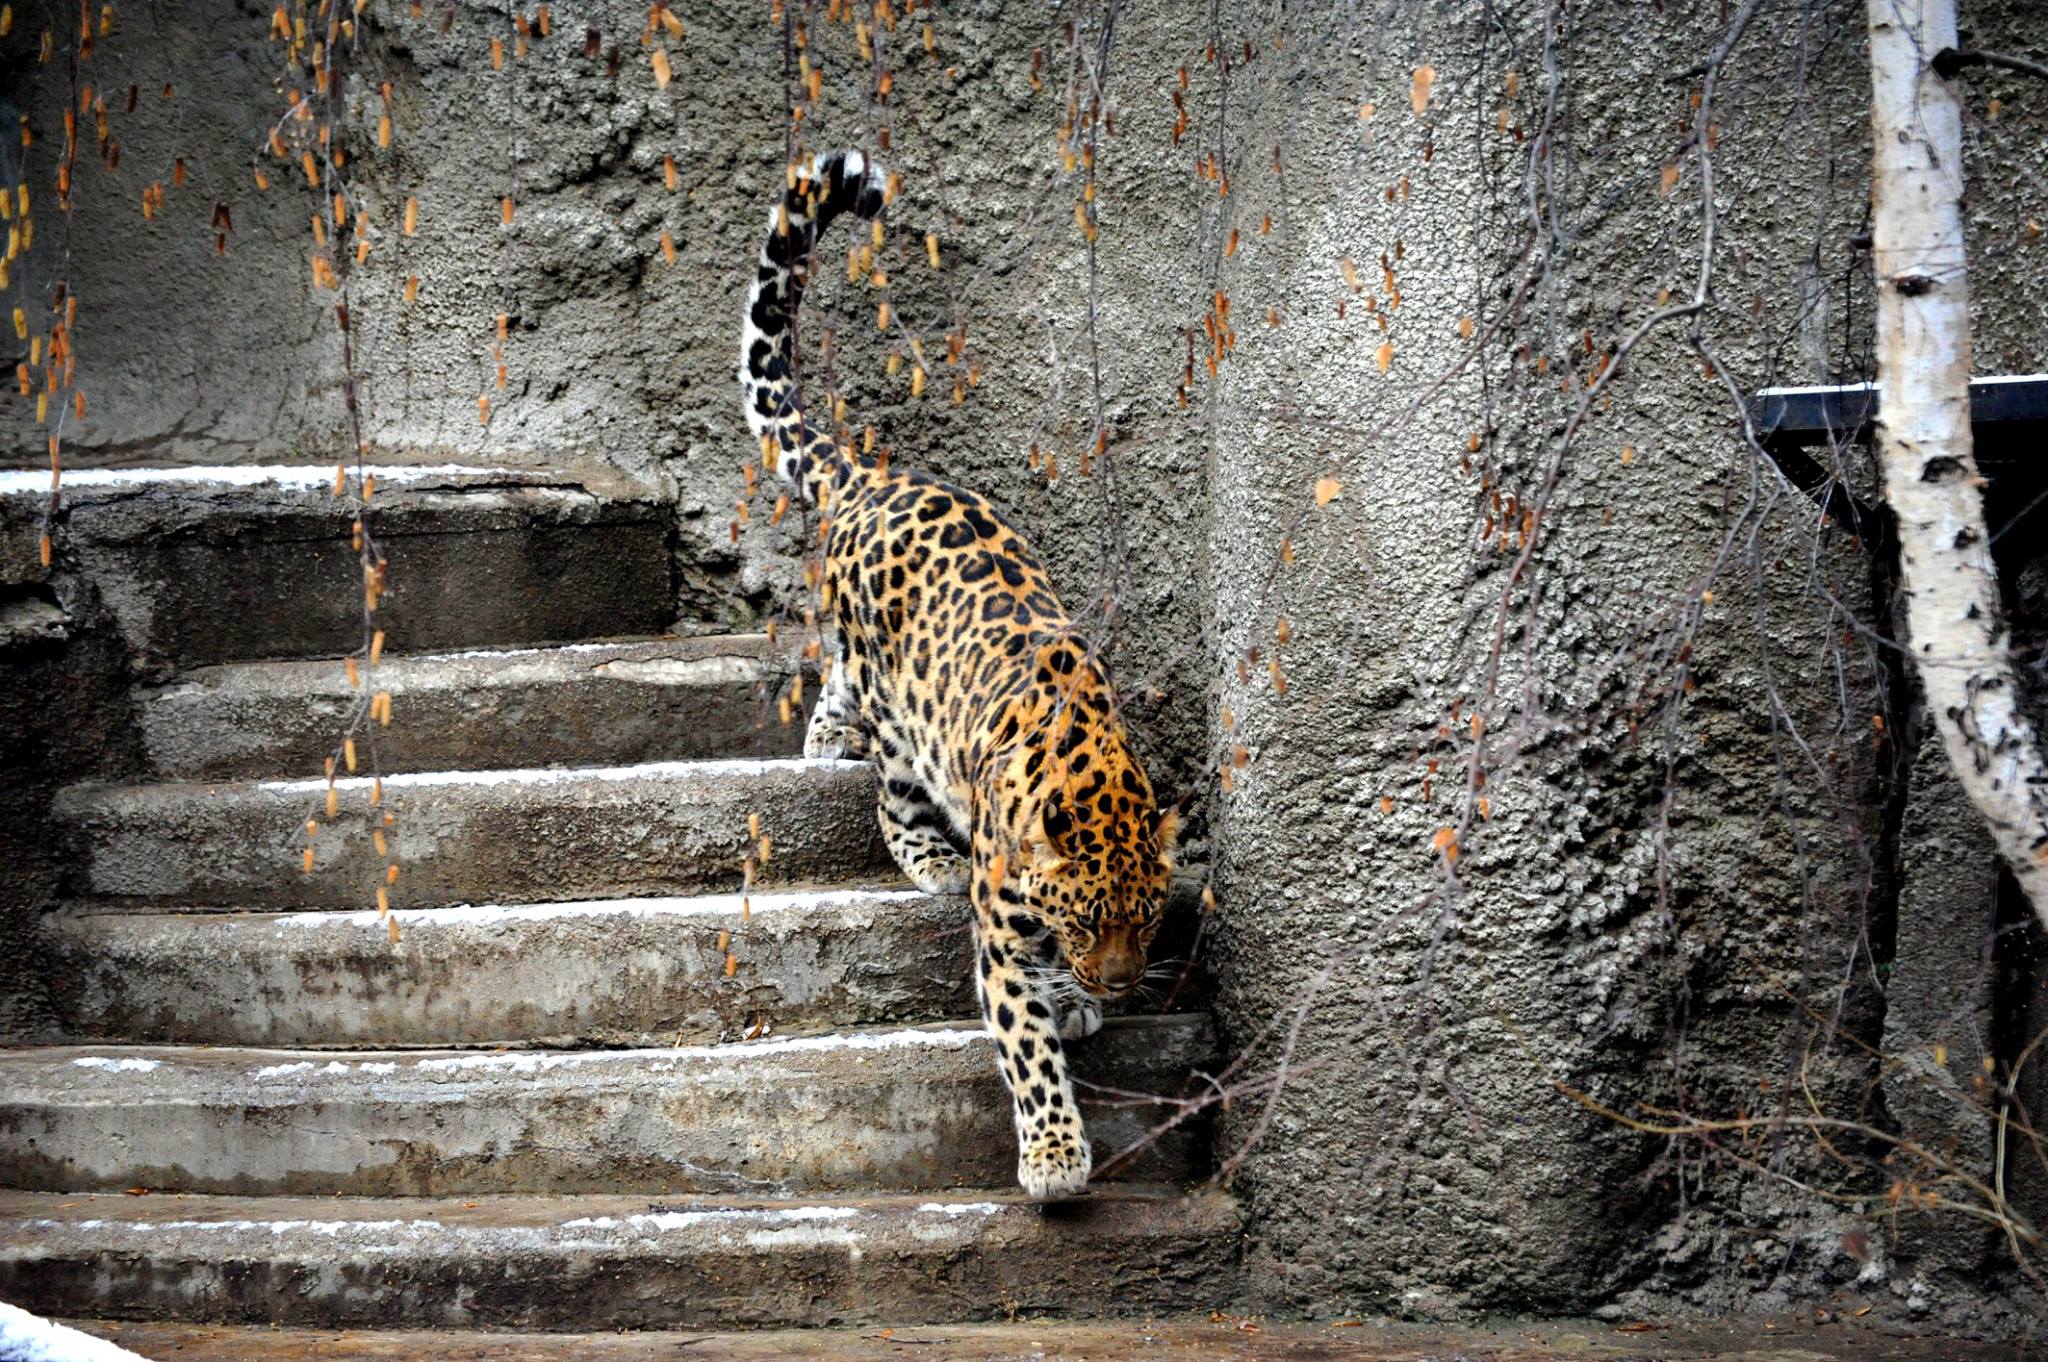 Женщины в леопардовом зоопарке